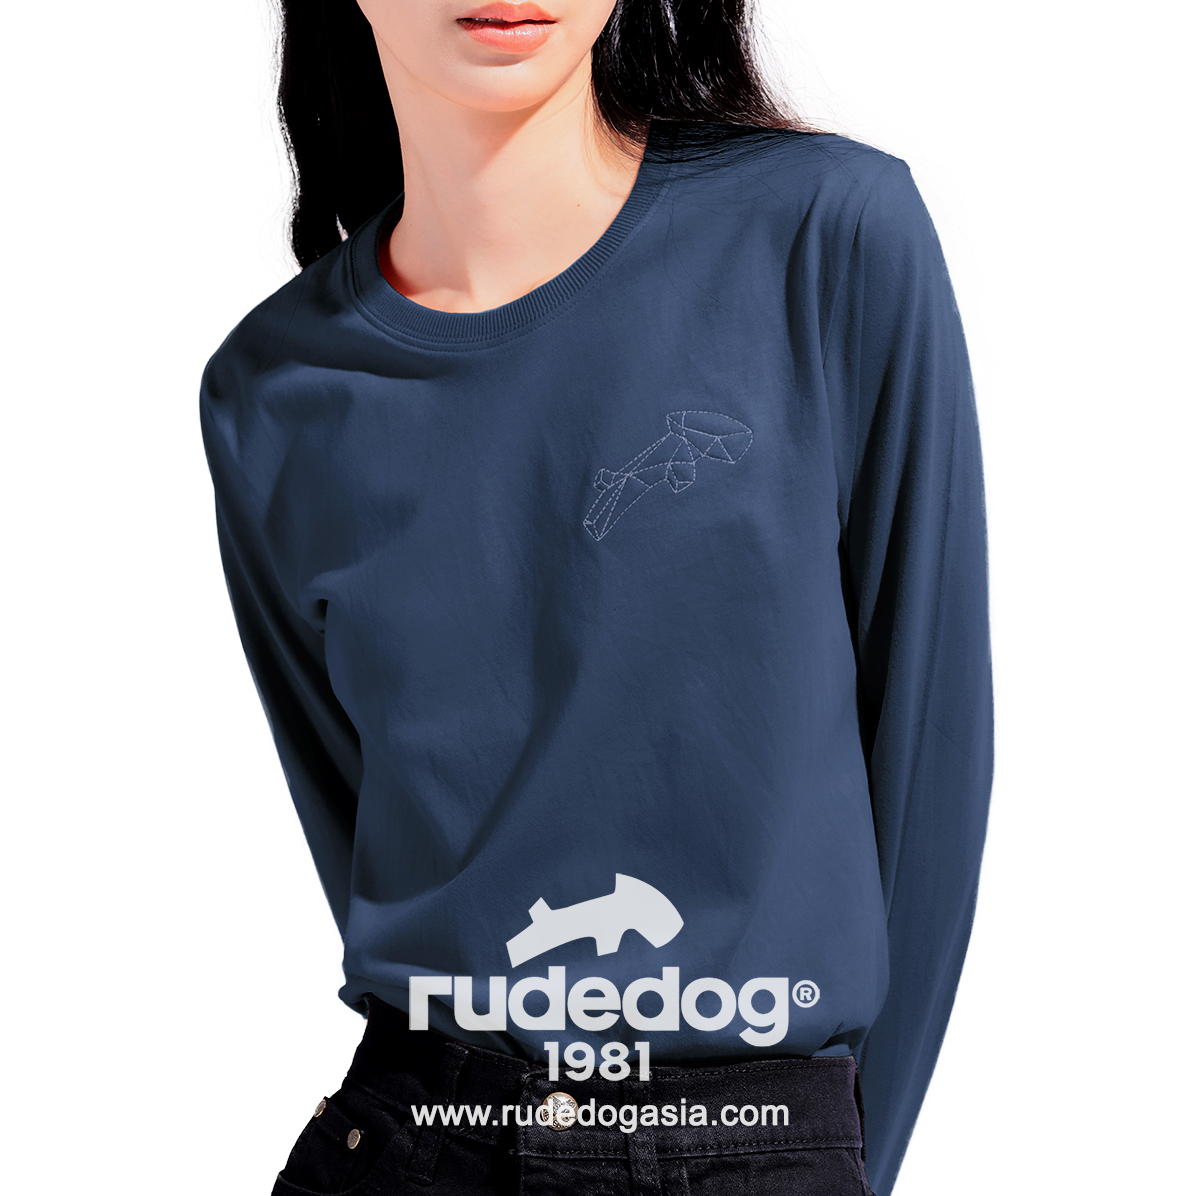 เสื้อยืดแขนยาว rudedog รุ่น Dogstar สีกรมท่า ผู้หญิง